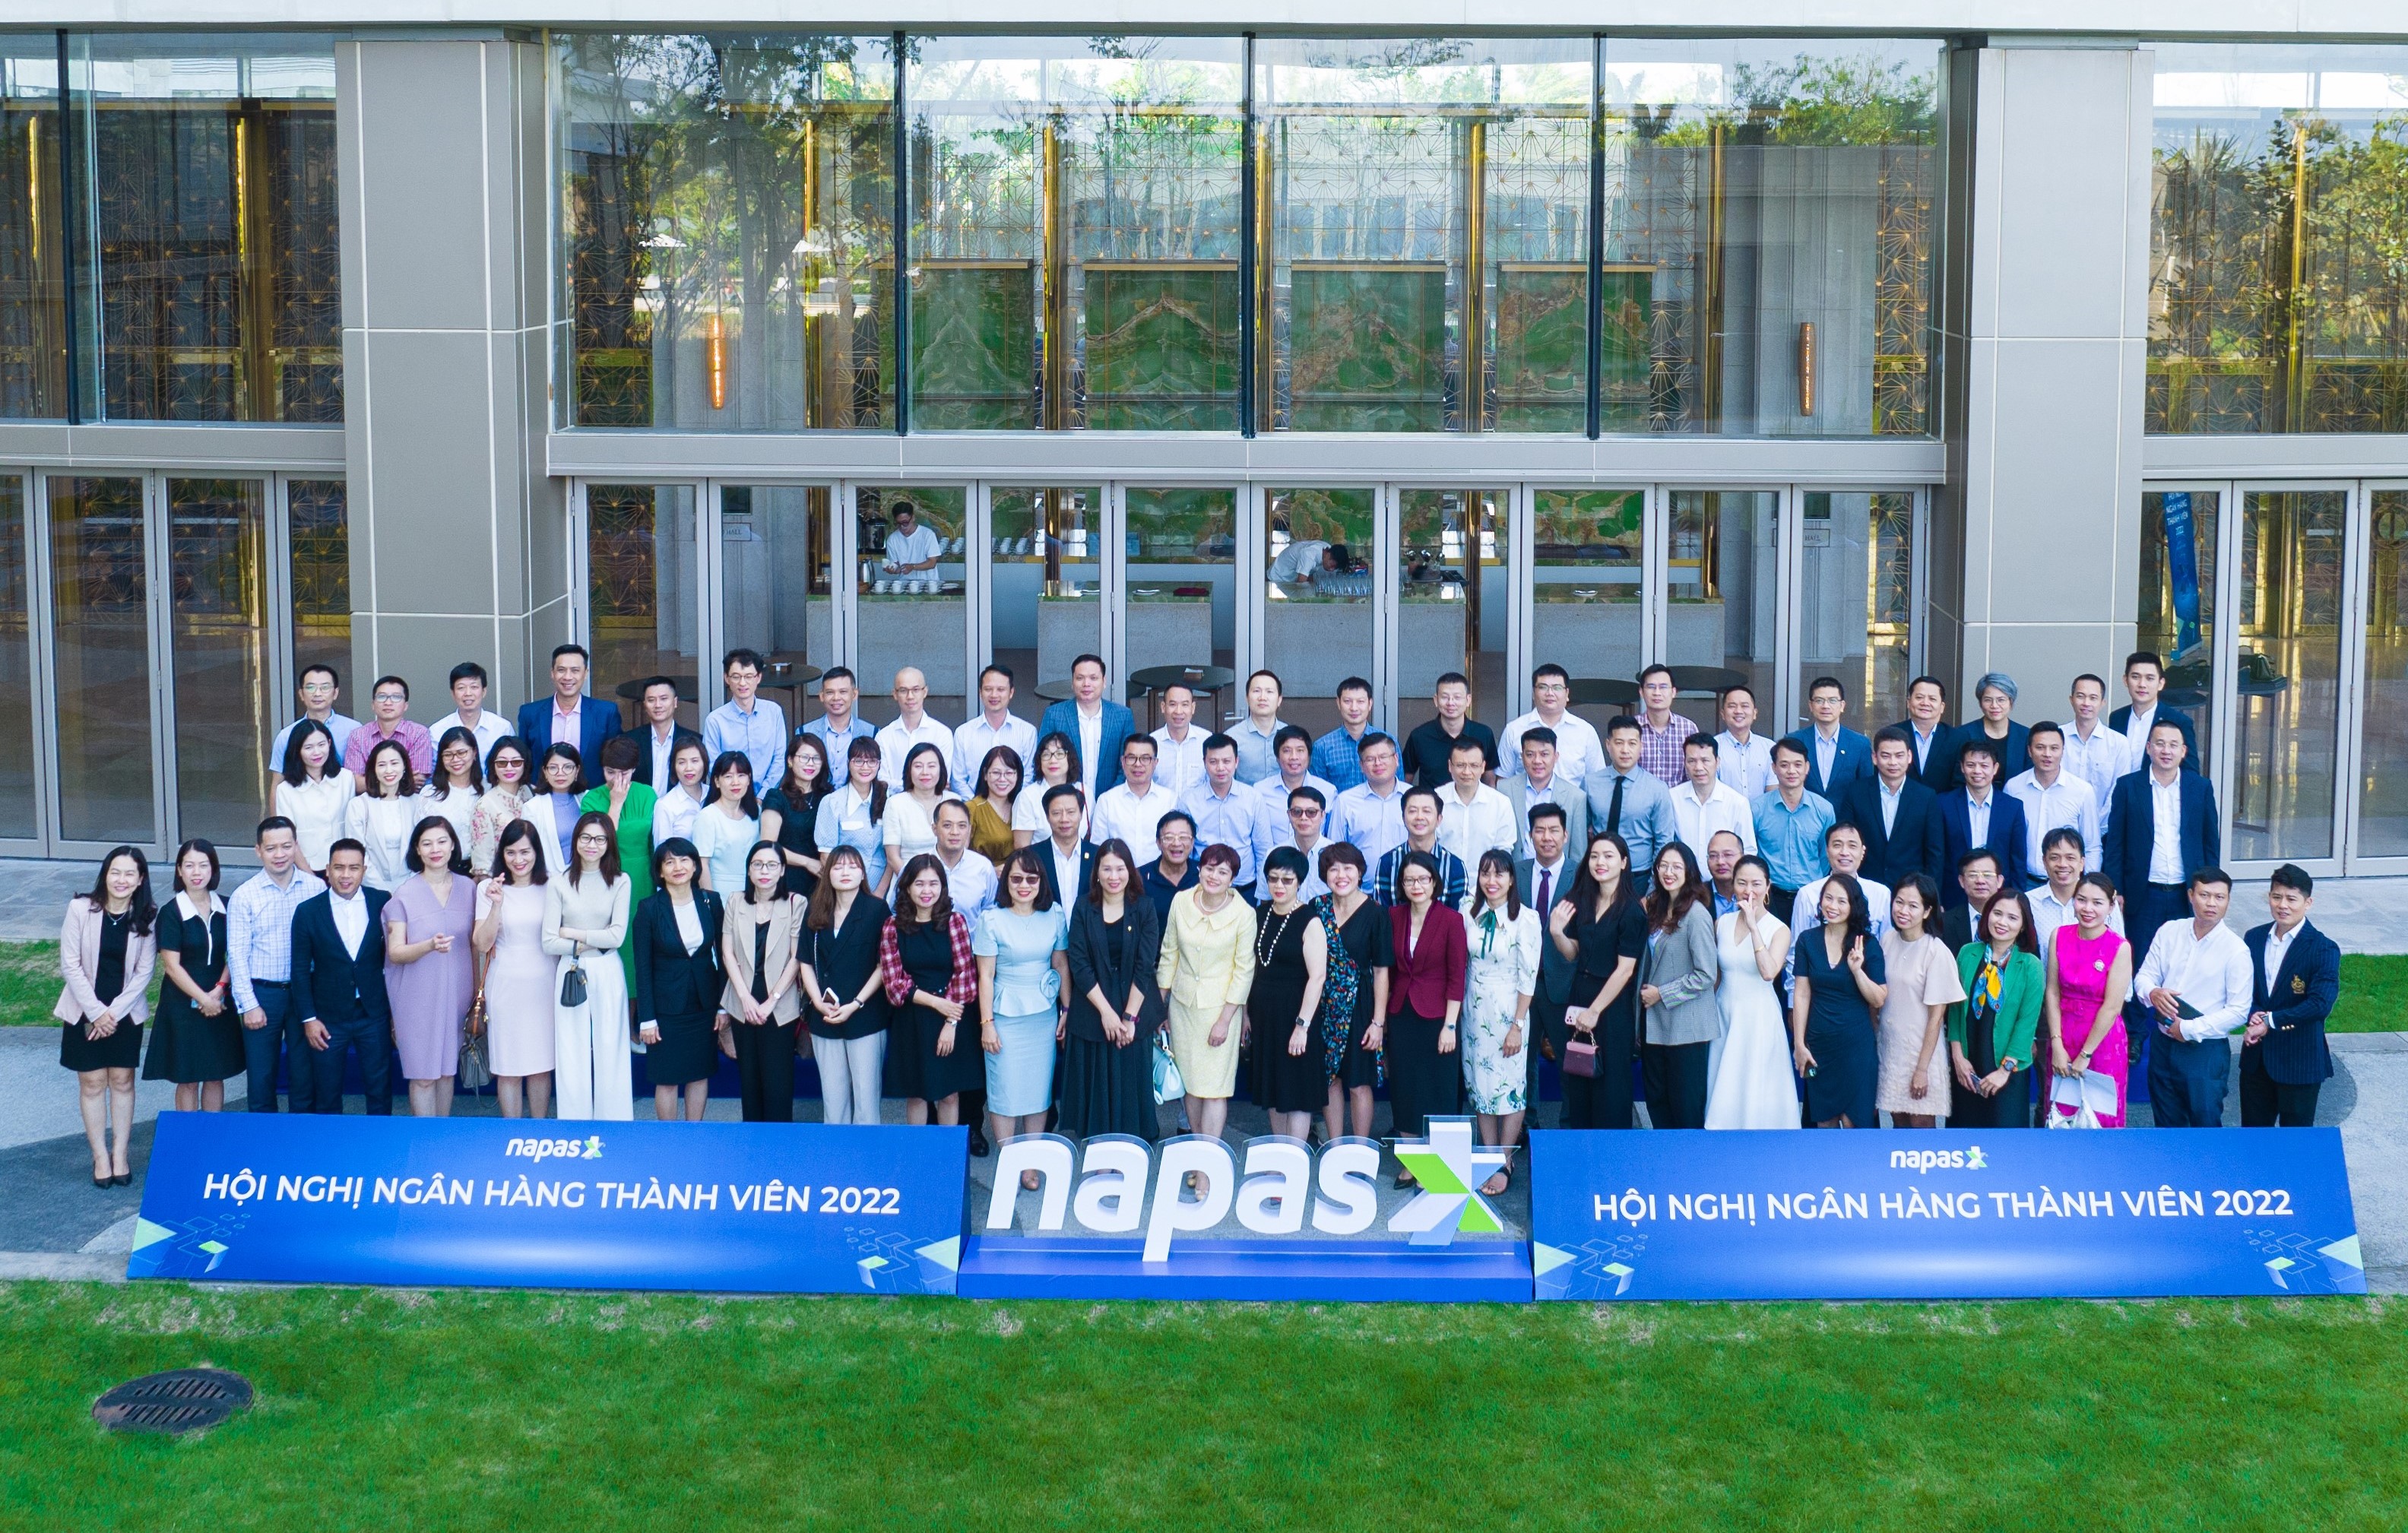 NAPAS tổ chức hội nghị Ngân hàng thành viên năm 2022 - Ảnh 1.